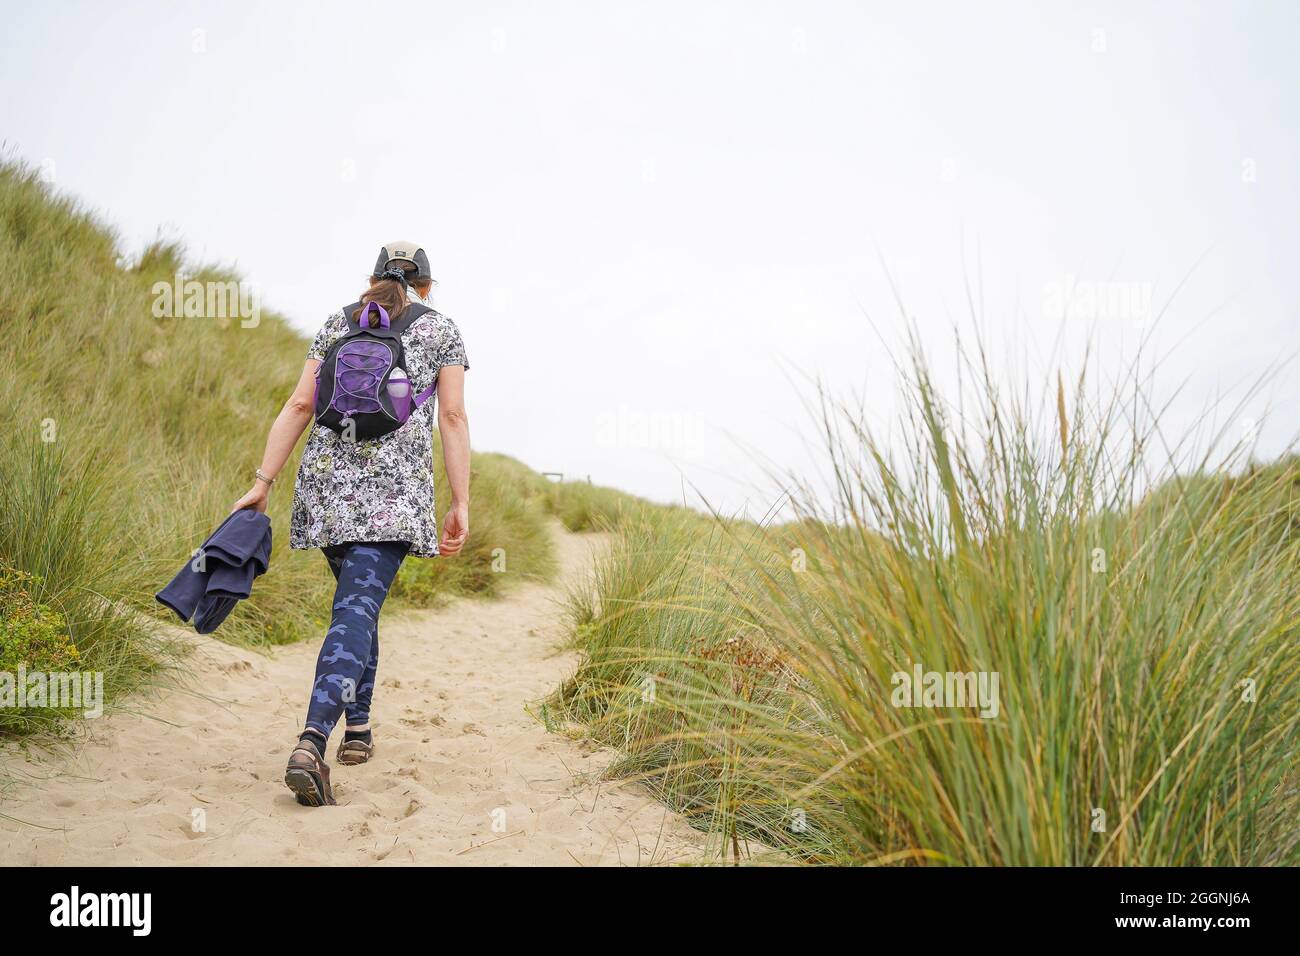 Rückansicht einer isolierten jungen Frau, die an einem bewölkten Sommertag in Wales, Großbritannien, in Küstensanddünen zur Strandpromenade läuft. Stockfoto